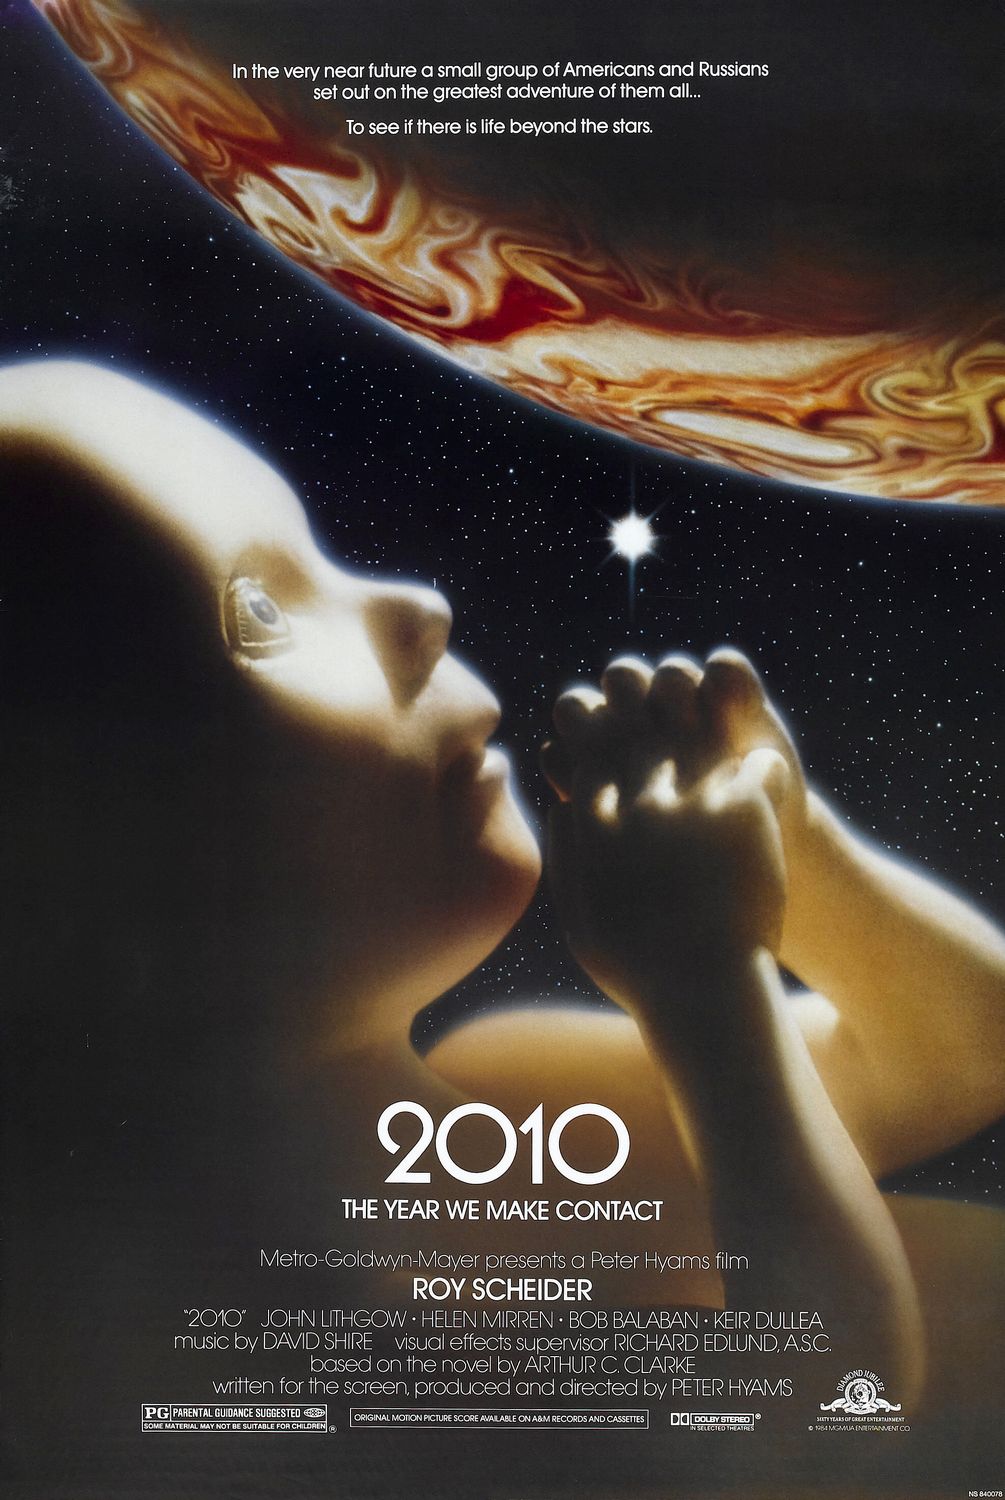 Постер - Космическая одиссея 2010: 1005x1500 / 204 Кб